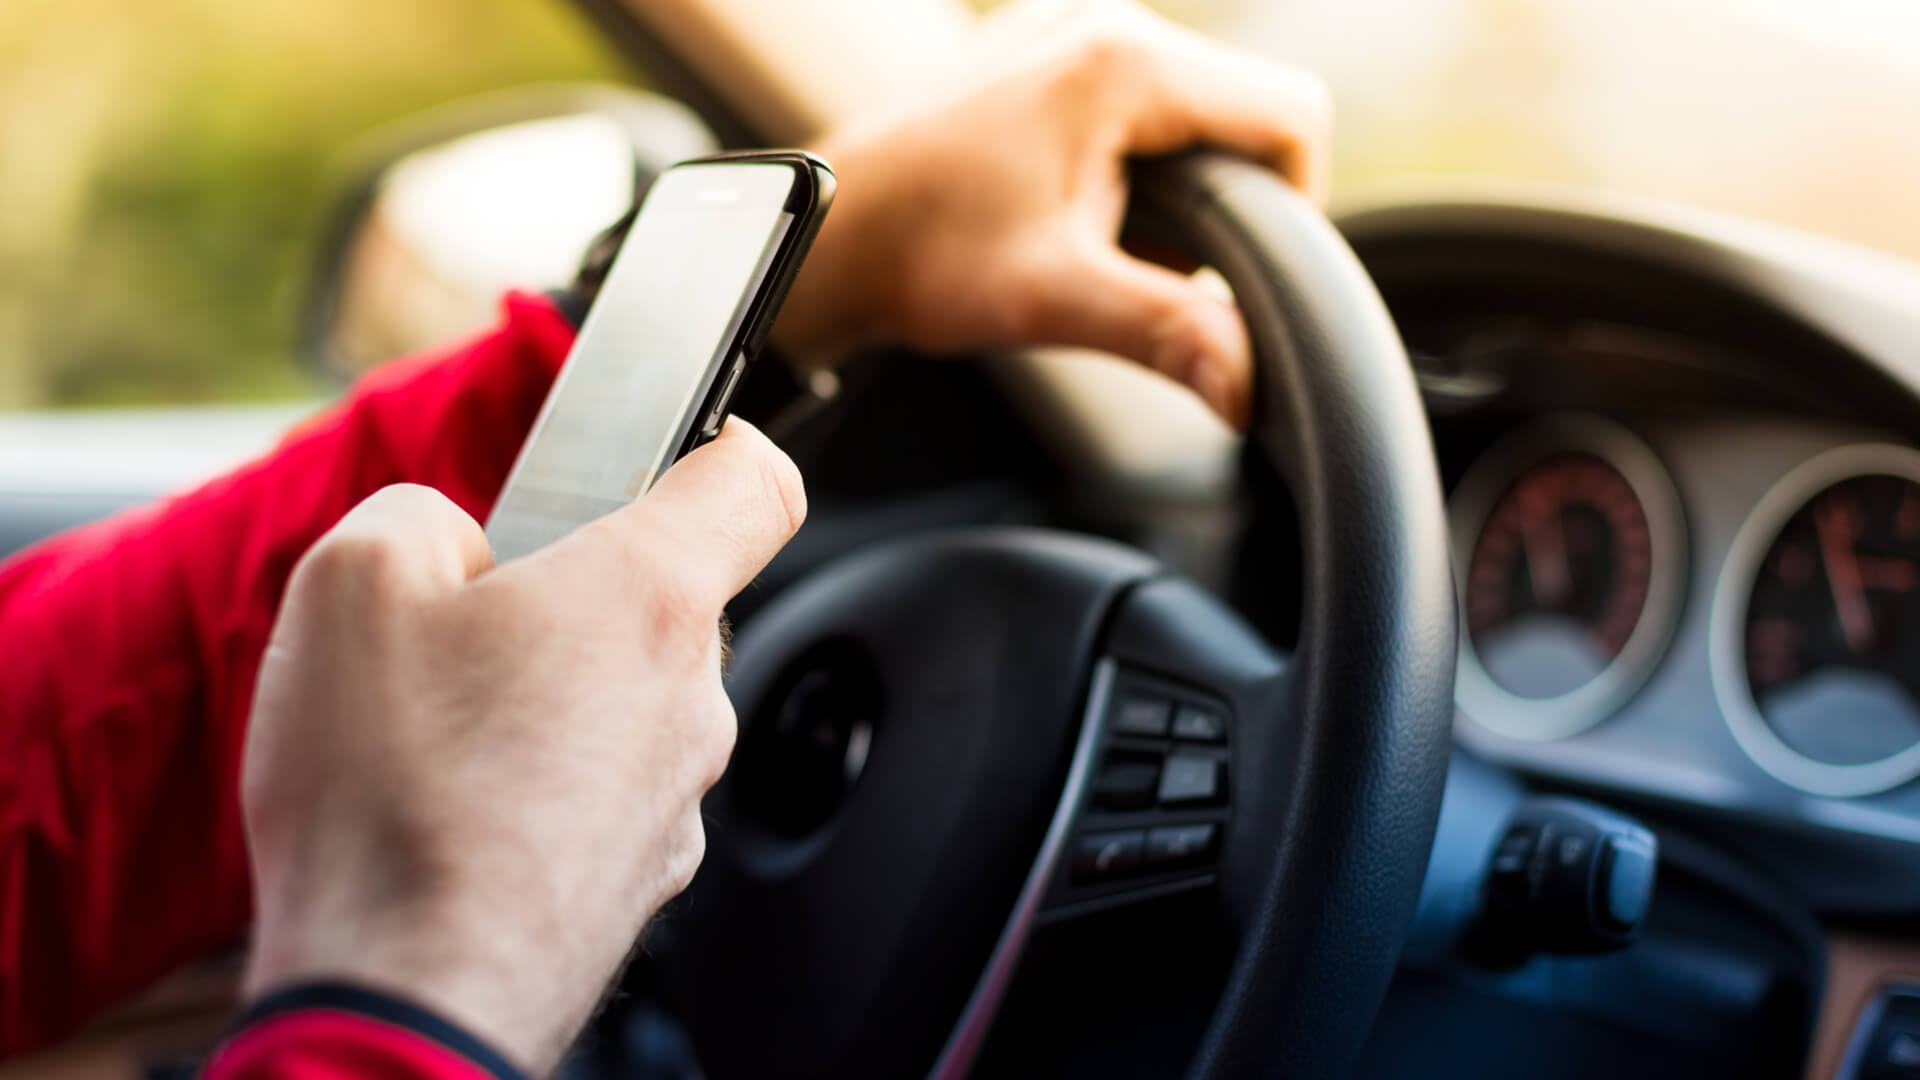 Казахстанские водители будут получать SMS-уведомление при въезде на платную трассу - Bizmedia.kz